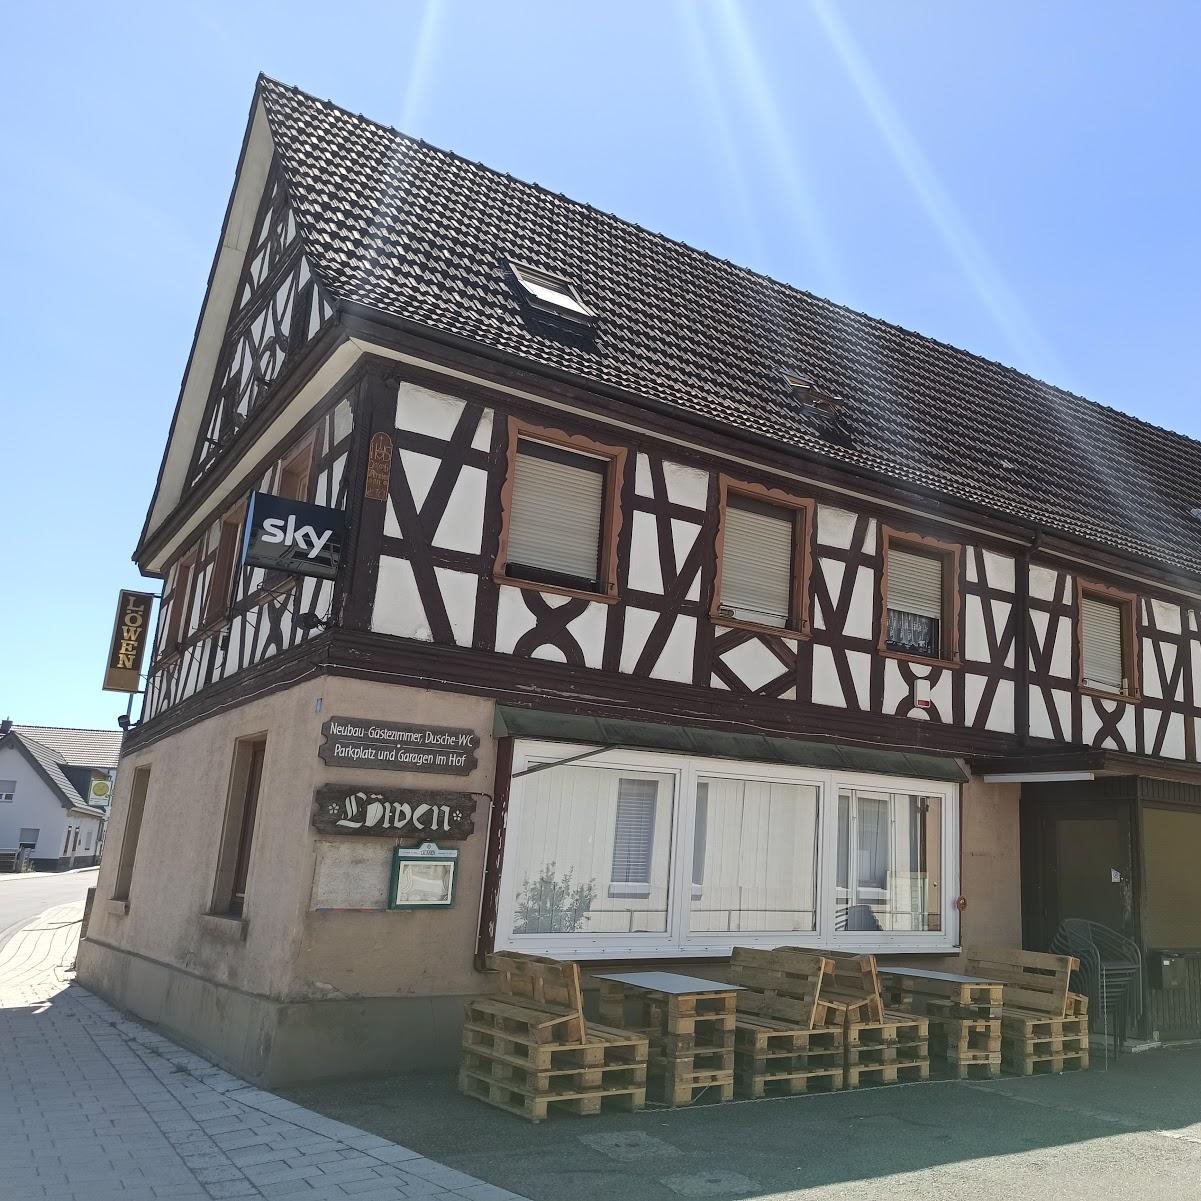 Restaurant "Löwen" in Achern